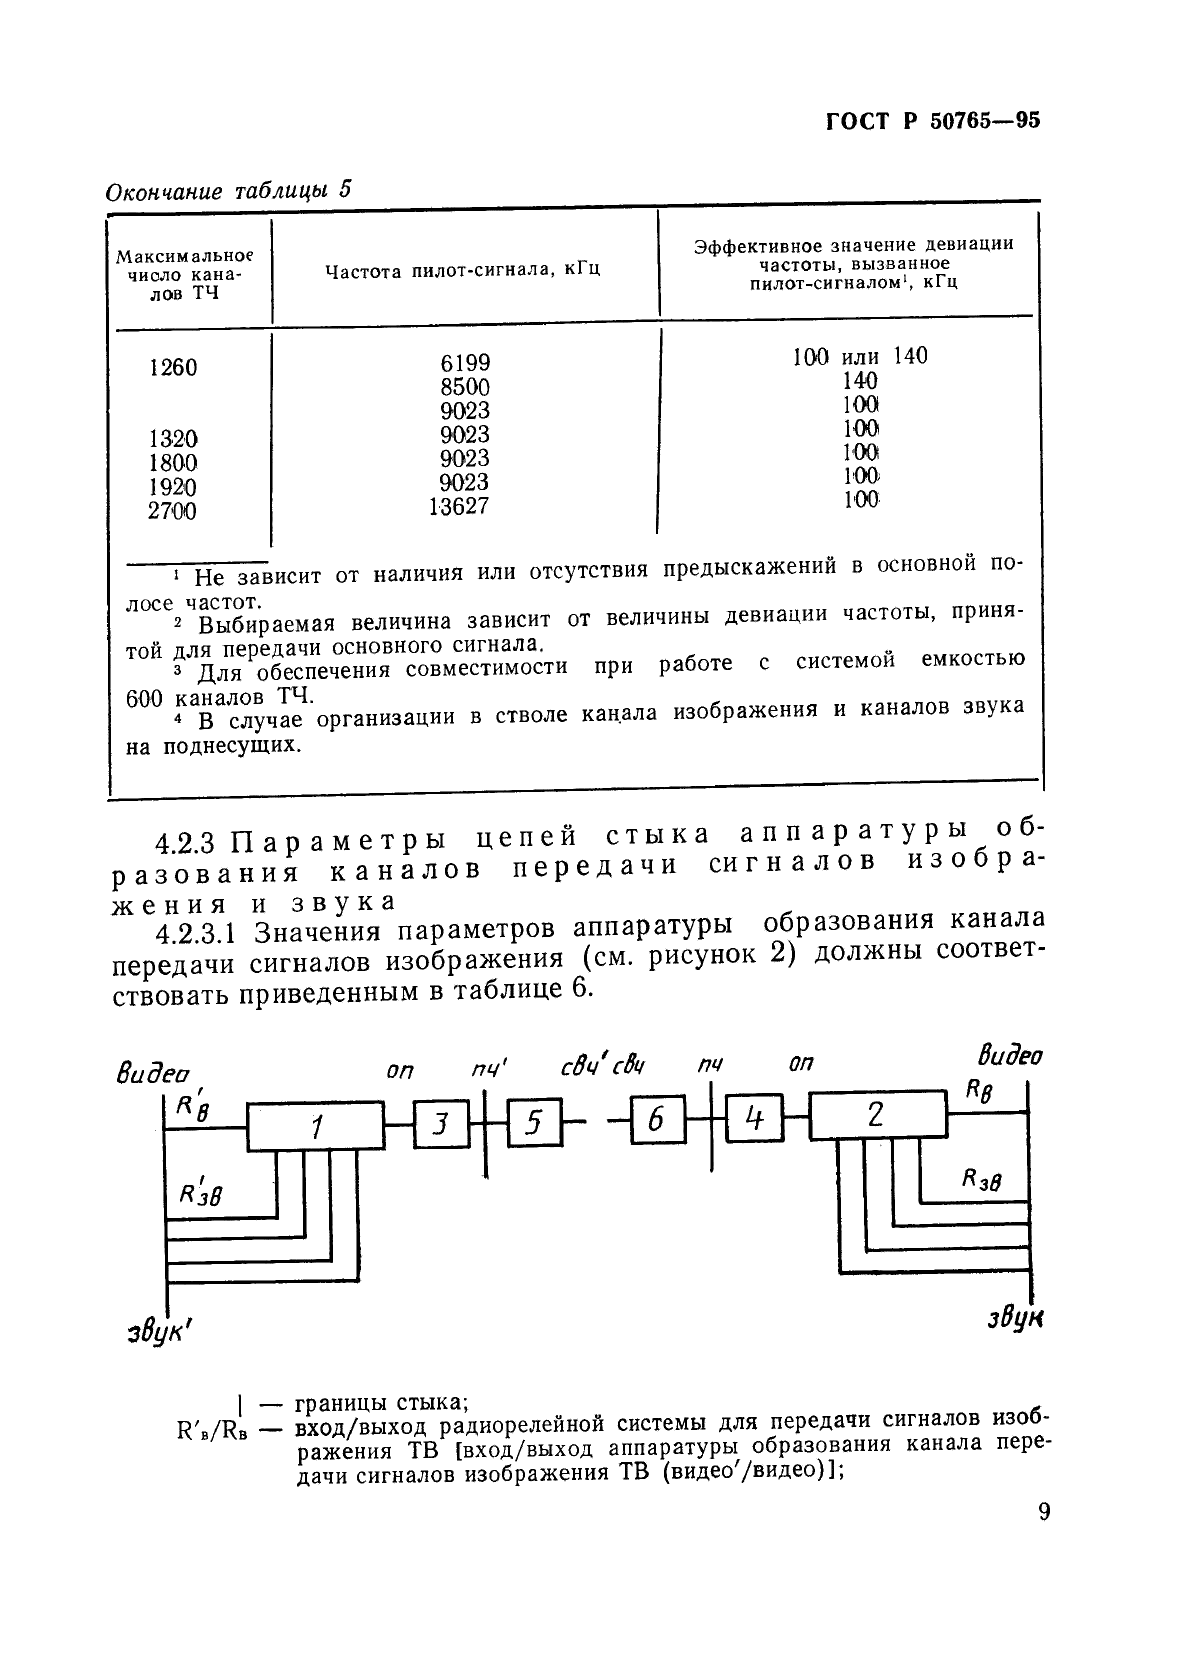 ГОСТ Р 50765-95 Аппаратура радиорелейная. Классификация. Основные параметры цепей стыка (фото 12 из 62)